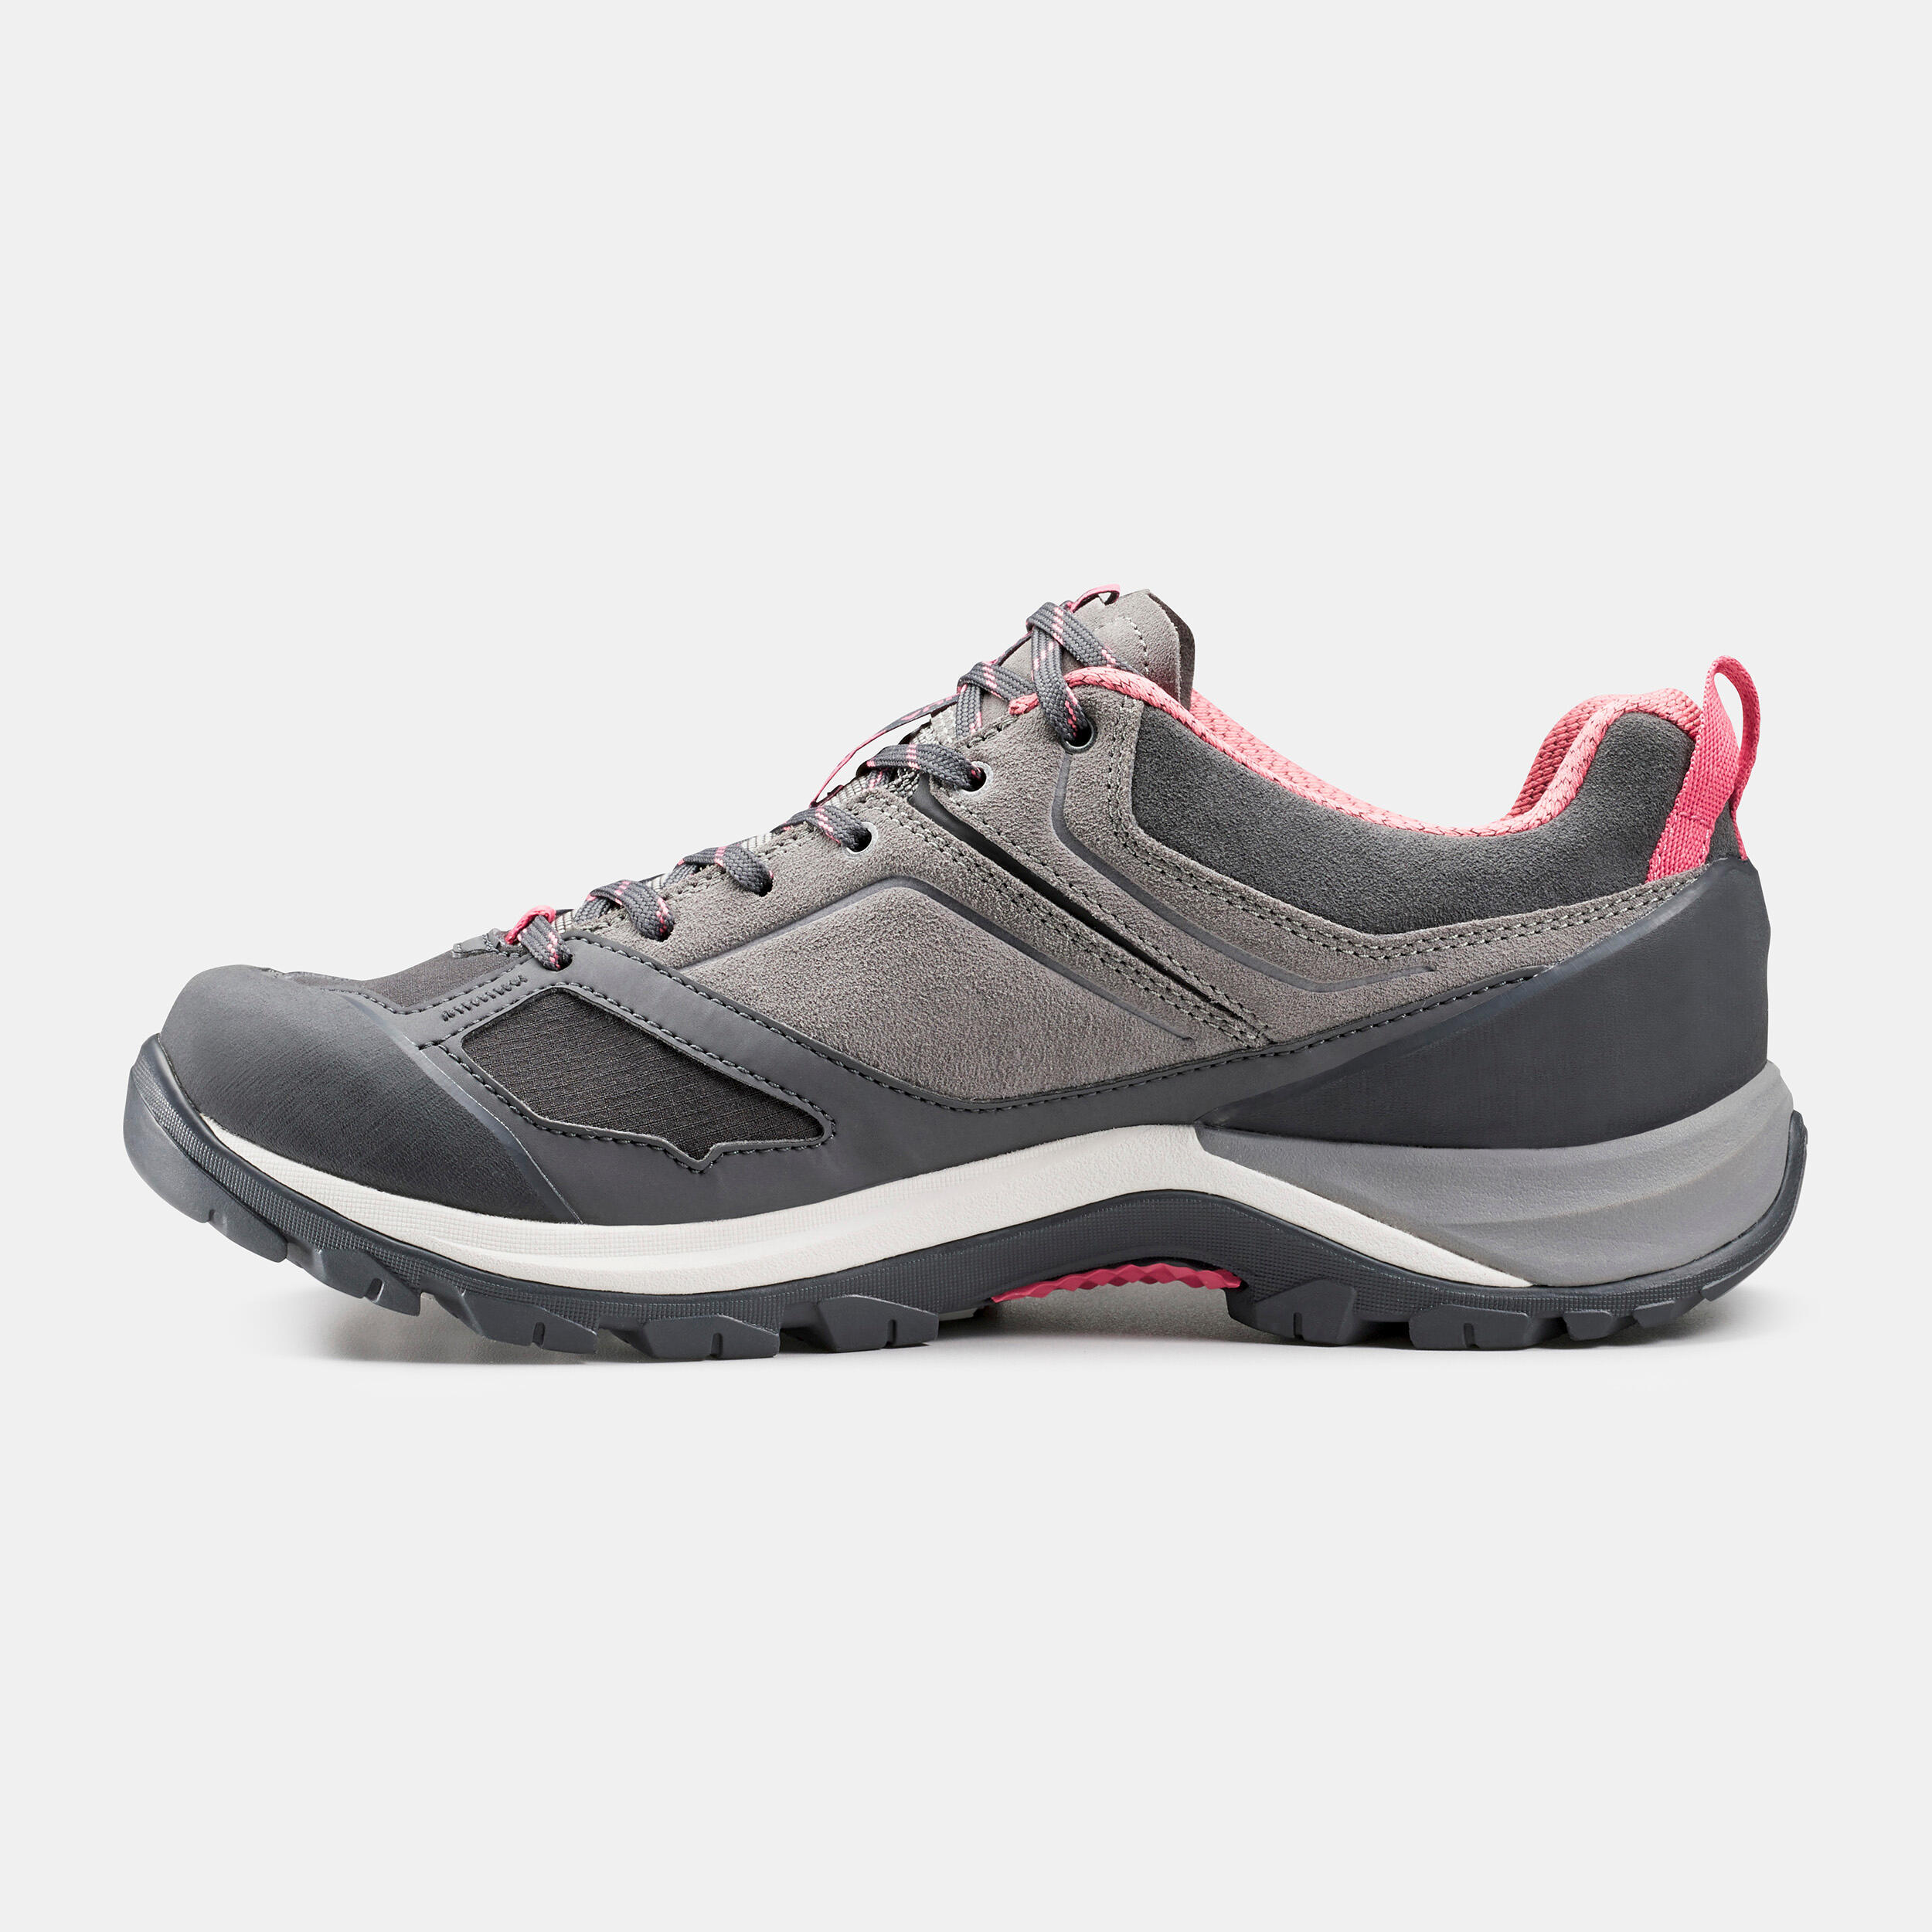 Women's Mountain Walking Waterproof Shoes - MH500 - pink/grey 3/7